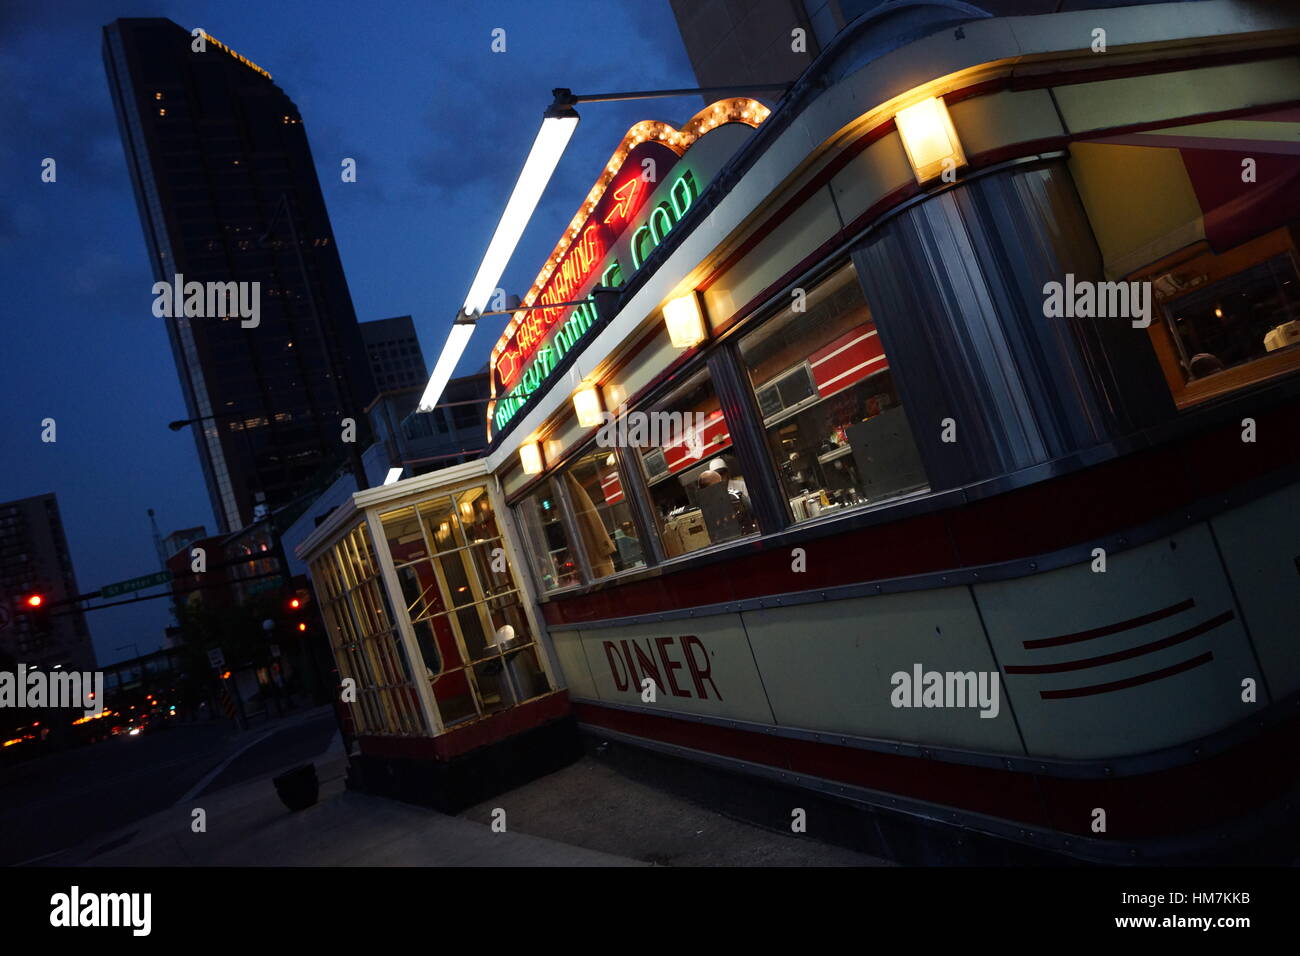 Vue extérieure d'une authentique restauration rapide américaine diner par nuit Banque D'Images